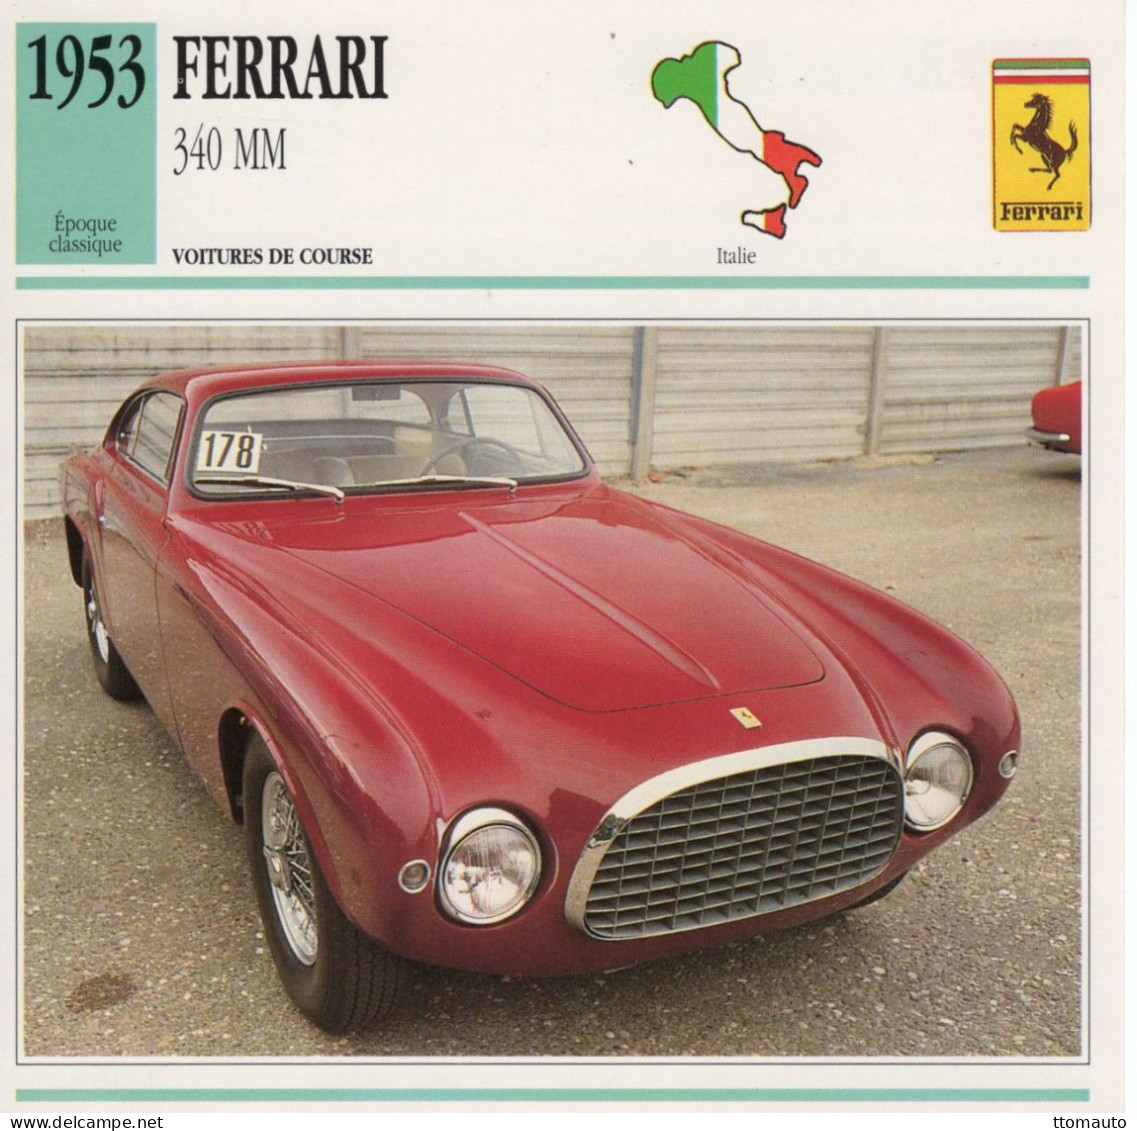 Ferrari 340 MM -  1953 - Voiture De Course -  Fiche Technique Automobile (I) - Automobili